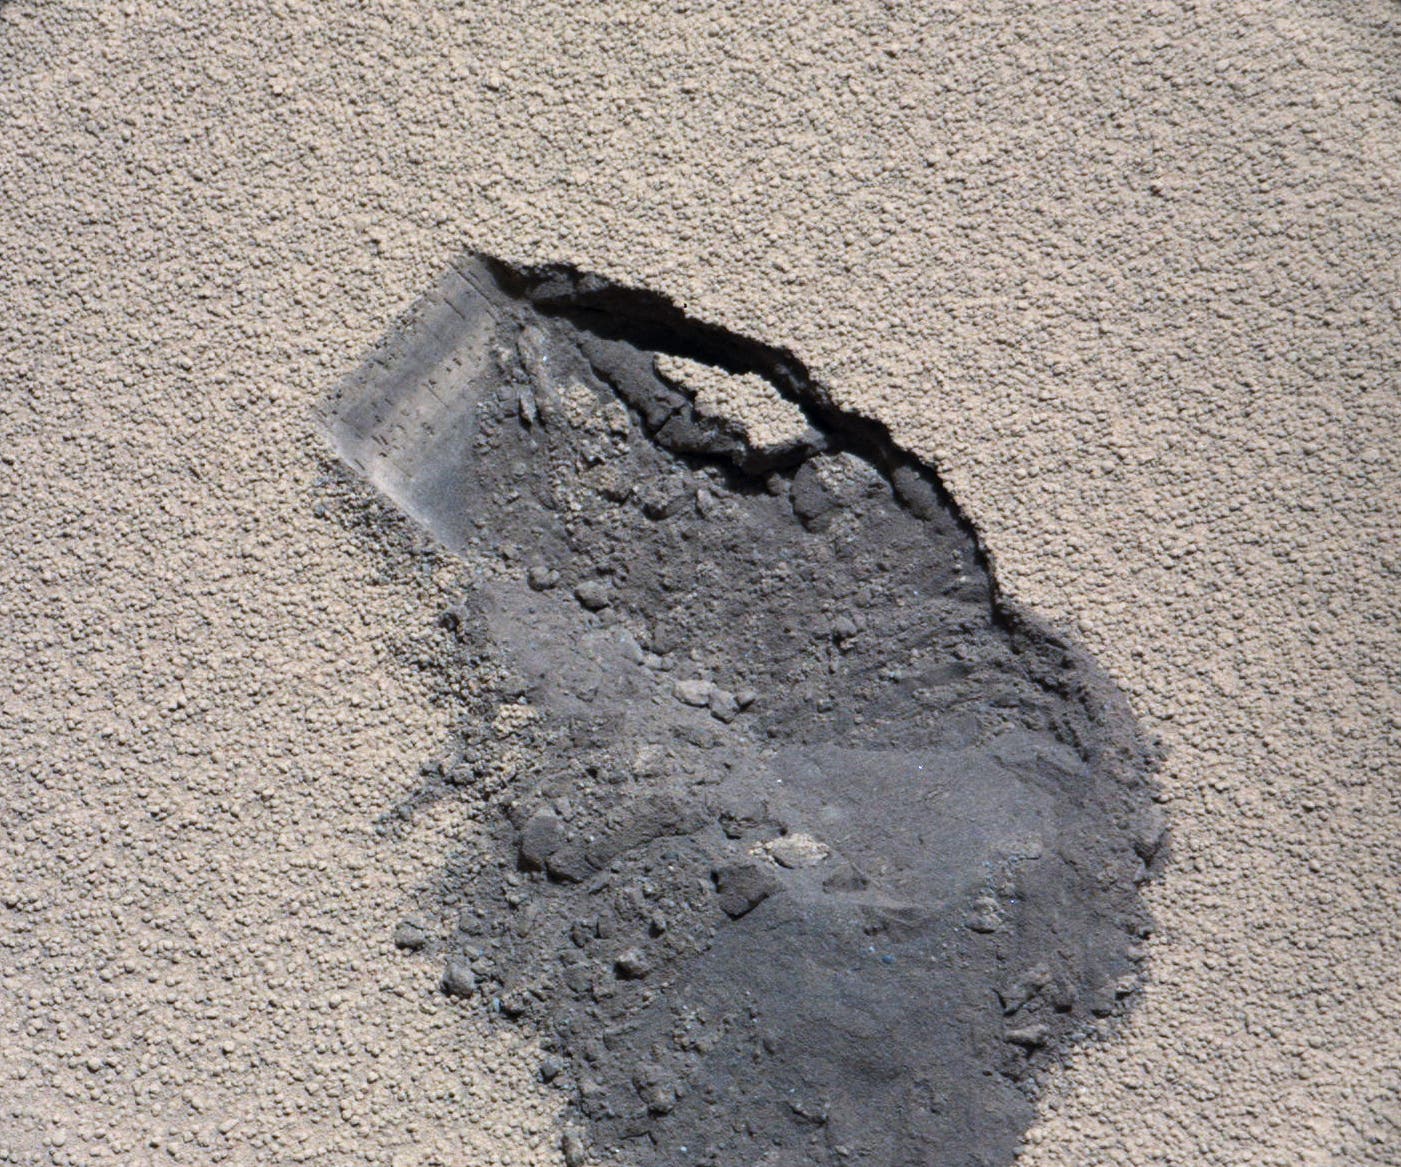 Sandkastenspiele auf dem Mars